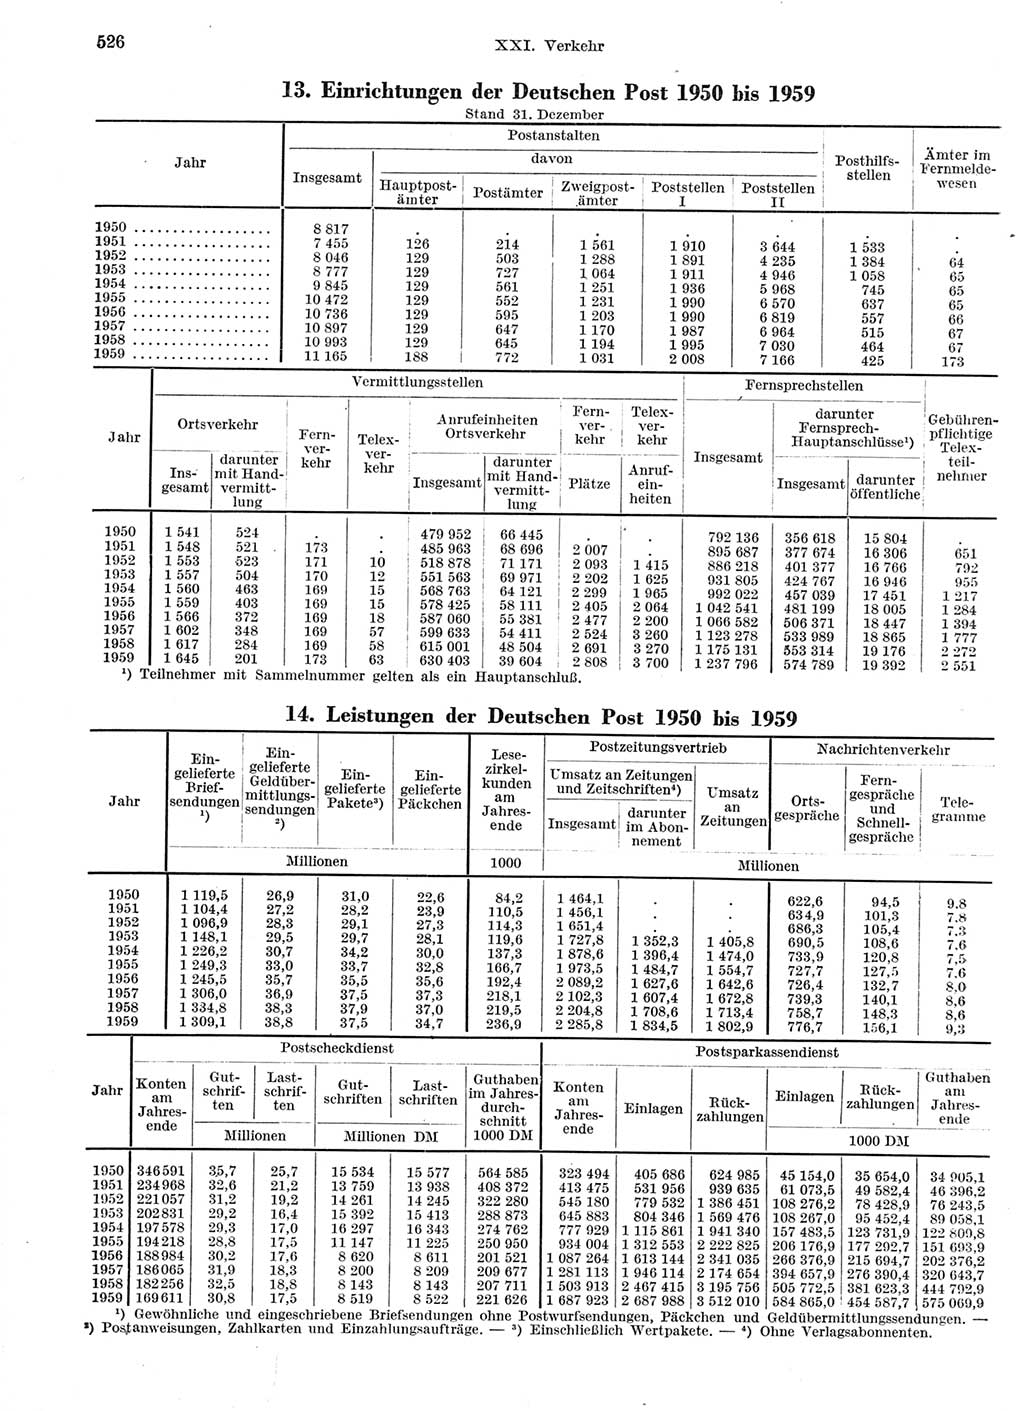 Statistisches Jahrbuch der Deutschen Demokratischen Republik (DDR) 1959, Seite 526 (Stat. Jb. DDR 1959, S. 526)